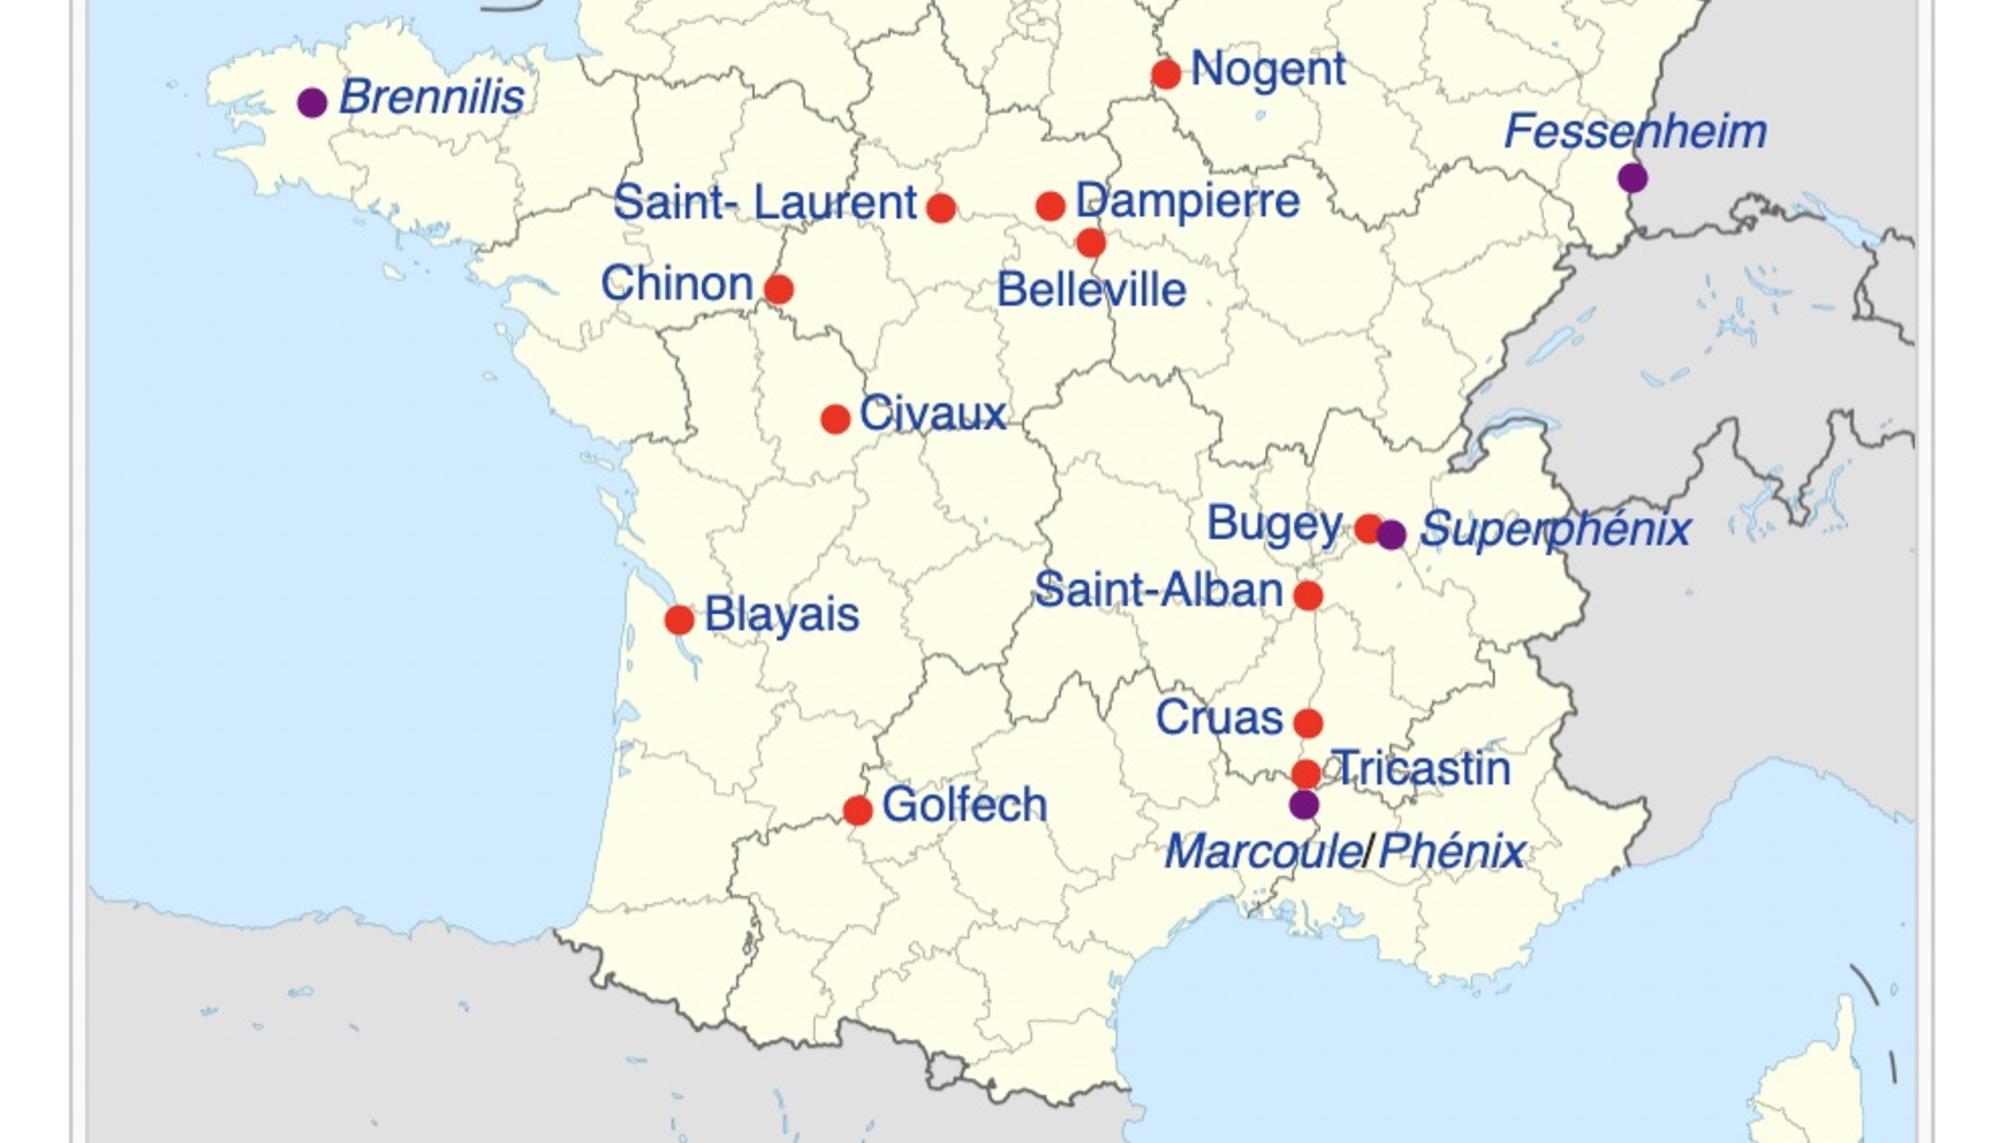 Mapa de las centrales nucleares francesas. Fuente: enriquedans.com